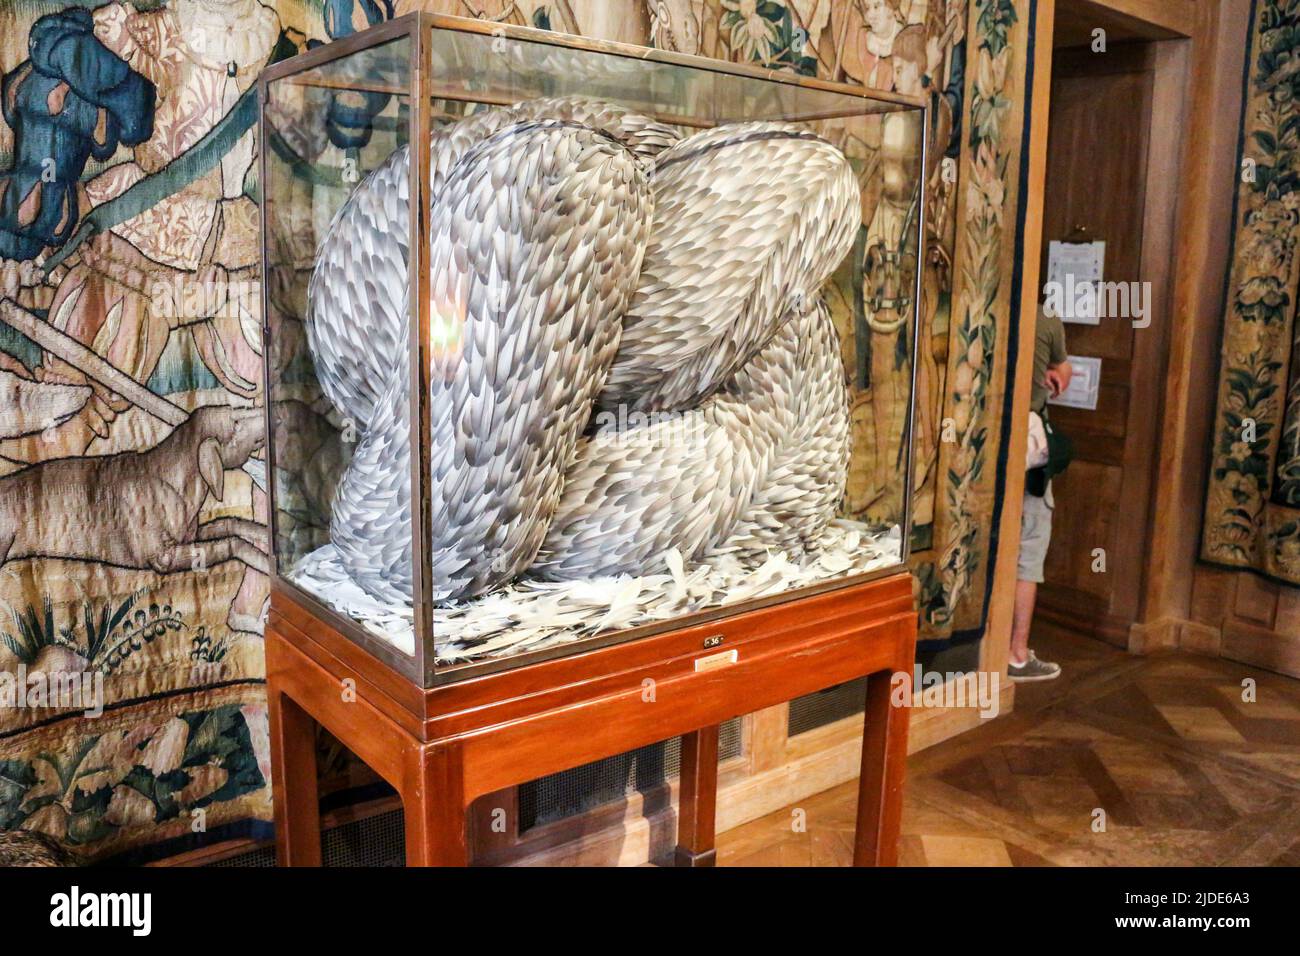 Musée de la Chasse et de la Nature - Paris : Kate Mcc GUIRE (Born 1964) English sculptor - feathers artwork Stock Photo